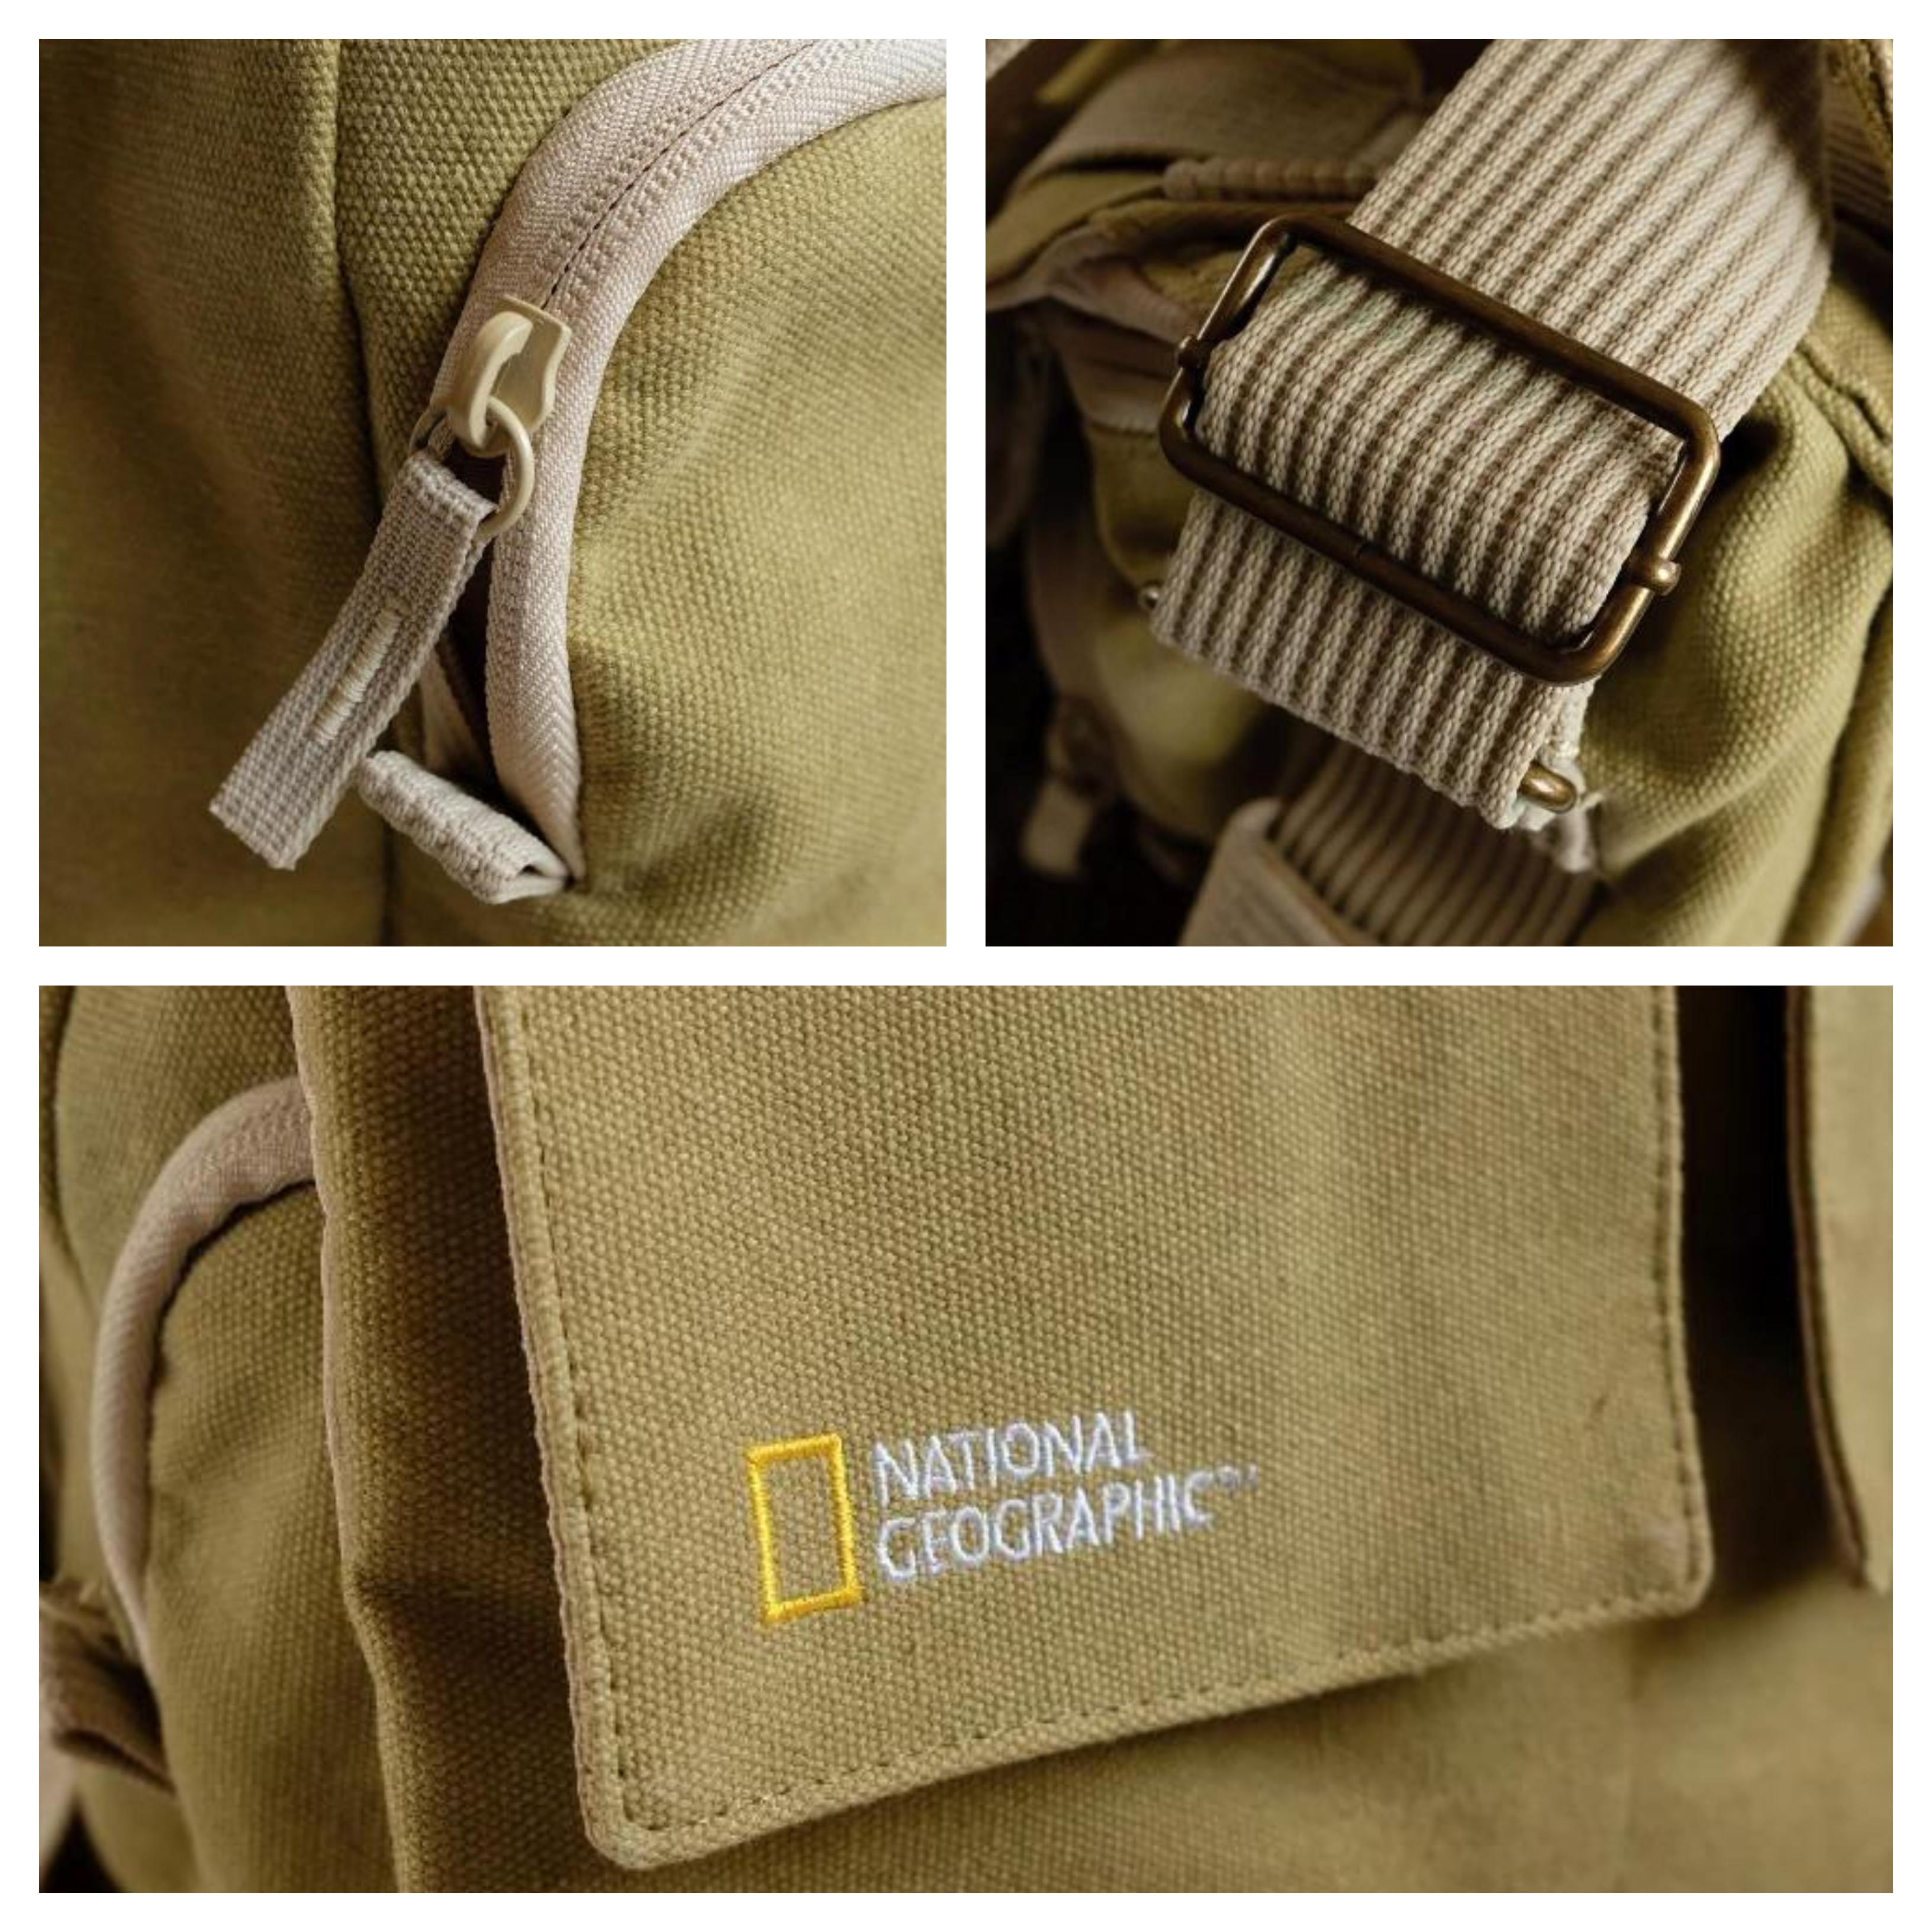 Dvojité zatváranie hlavnej komory zvyšuje vodeodolnosť a prachuvzdornosť fotobrašne National Geographic Earth Explorer Shoulder Bag S pre maximálnu bezpečnosť uloženej techniky.